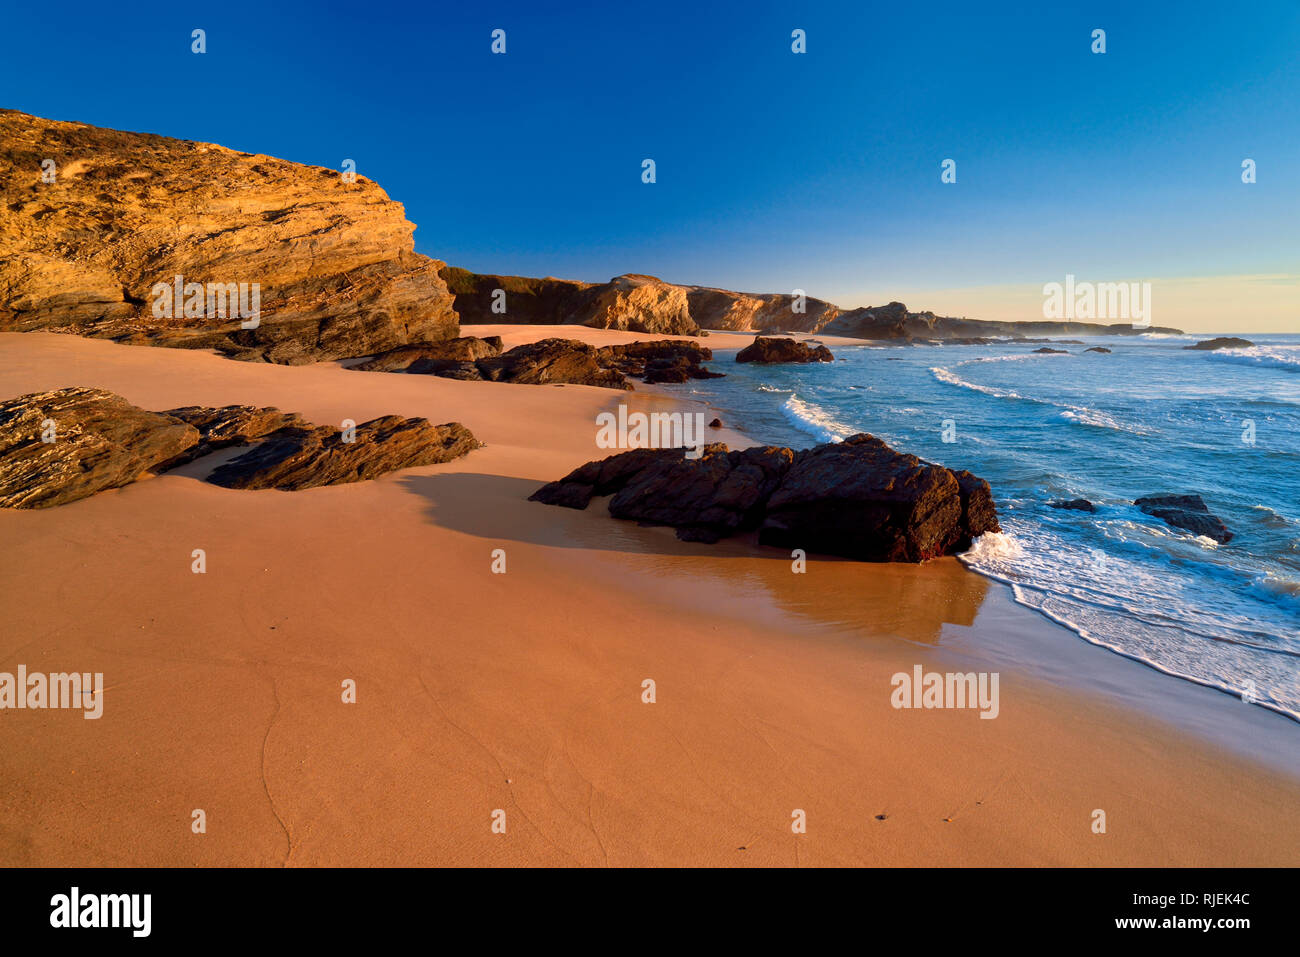 Einsamer Strand mit Sand und Felsen entlang einer ruhigen blauen Ozean mit weichen Wellen Stockfoto